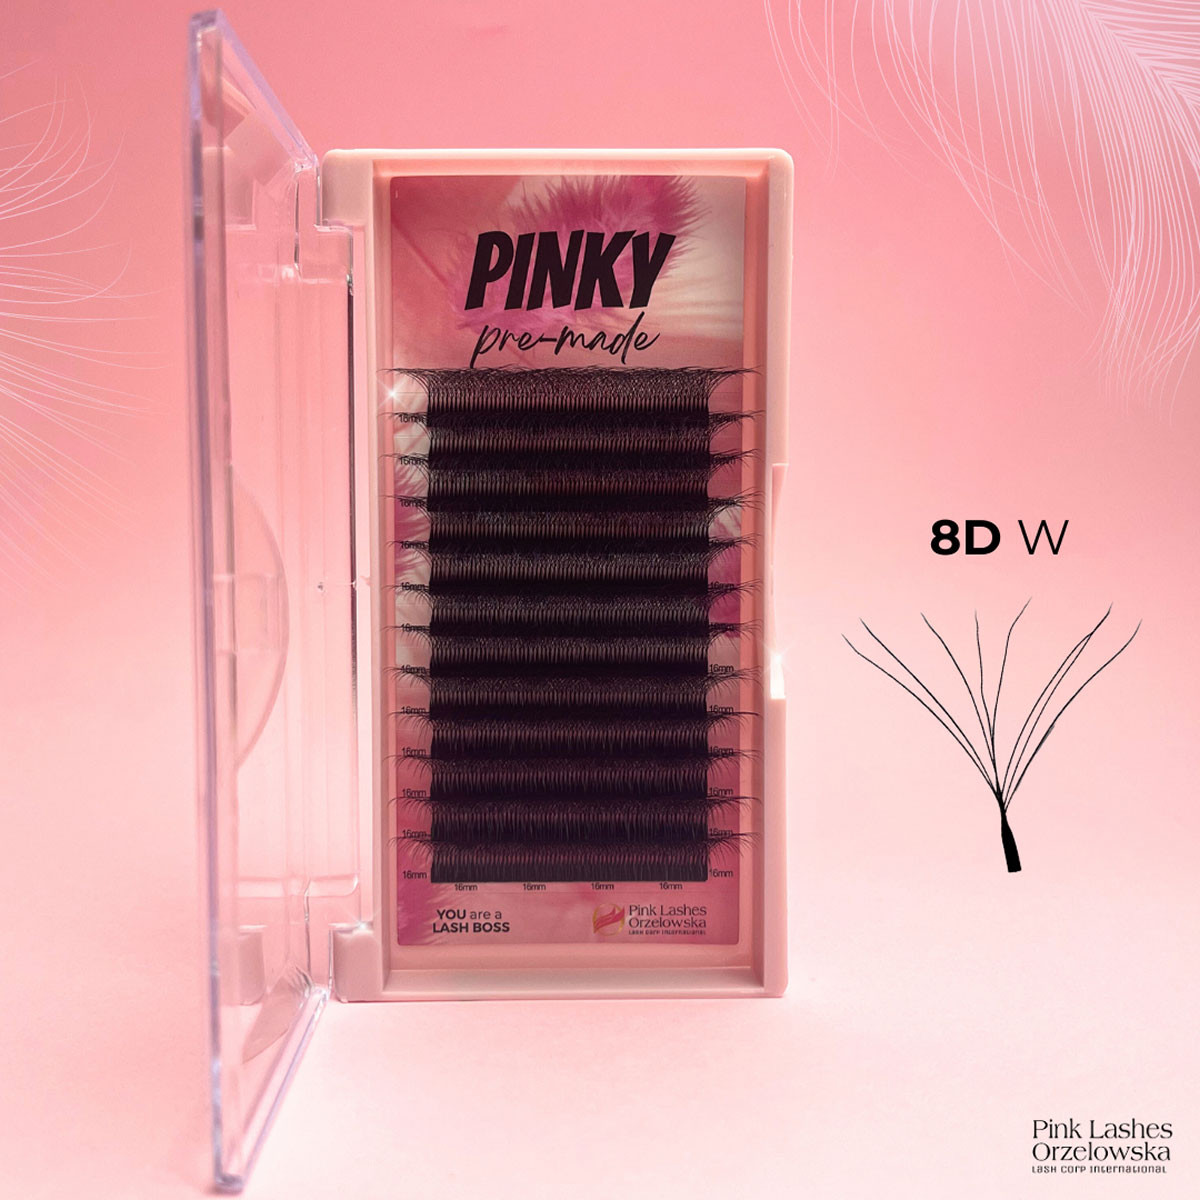 8D W PINKY, Curl D, premade: extensiones de pestañas prehechas, volumen rápido